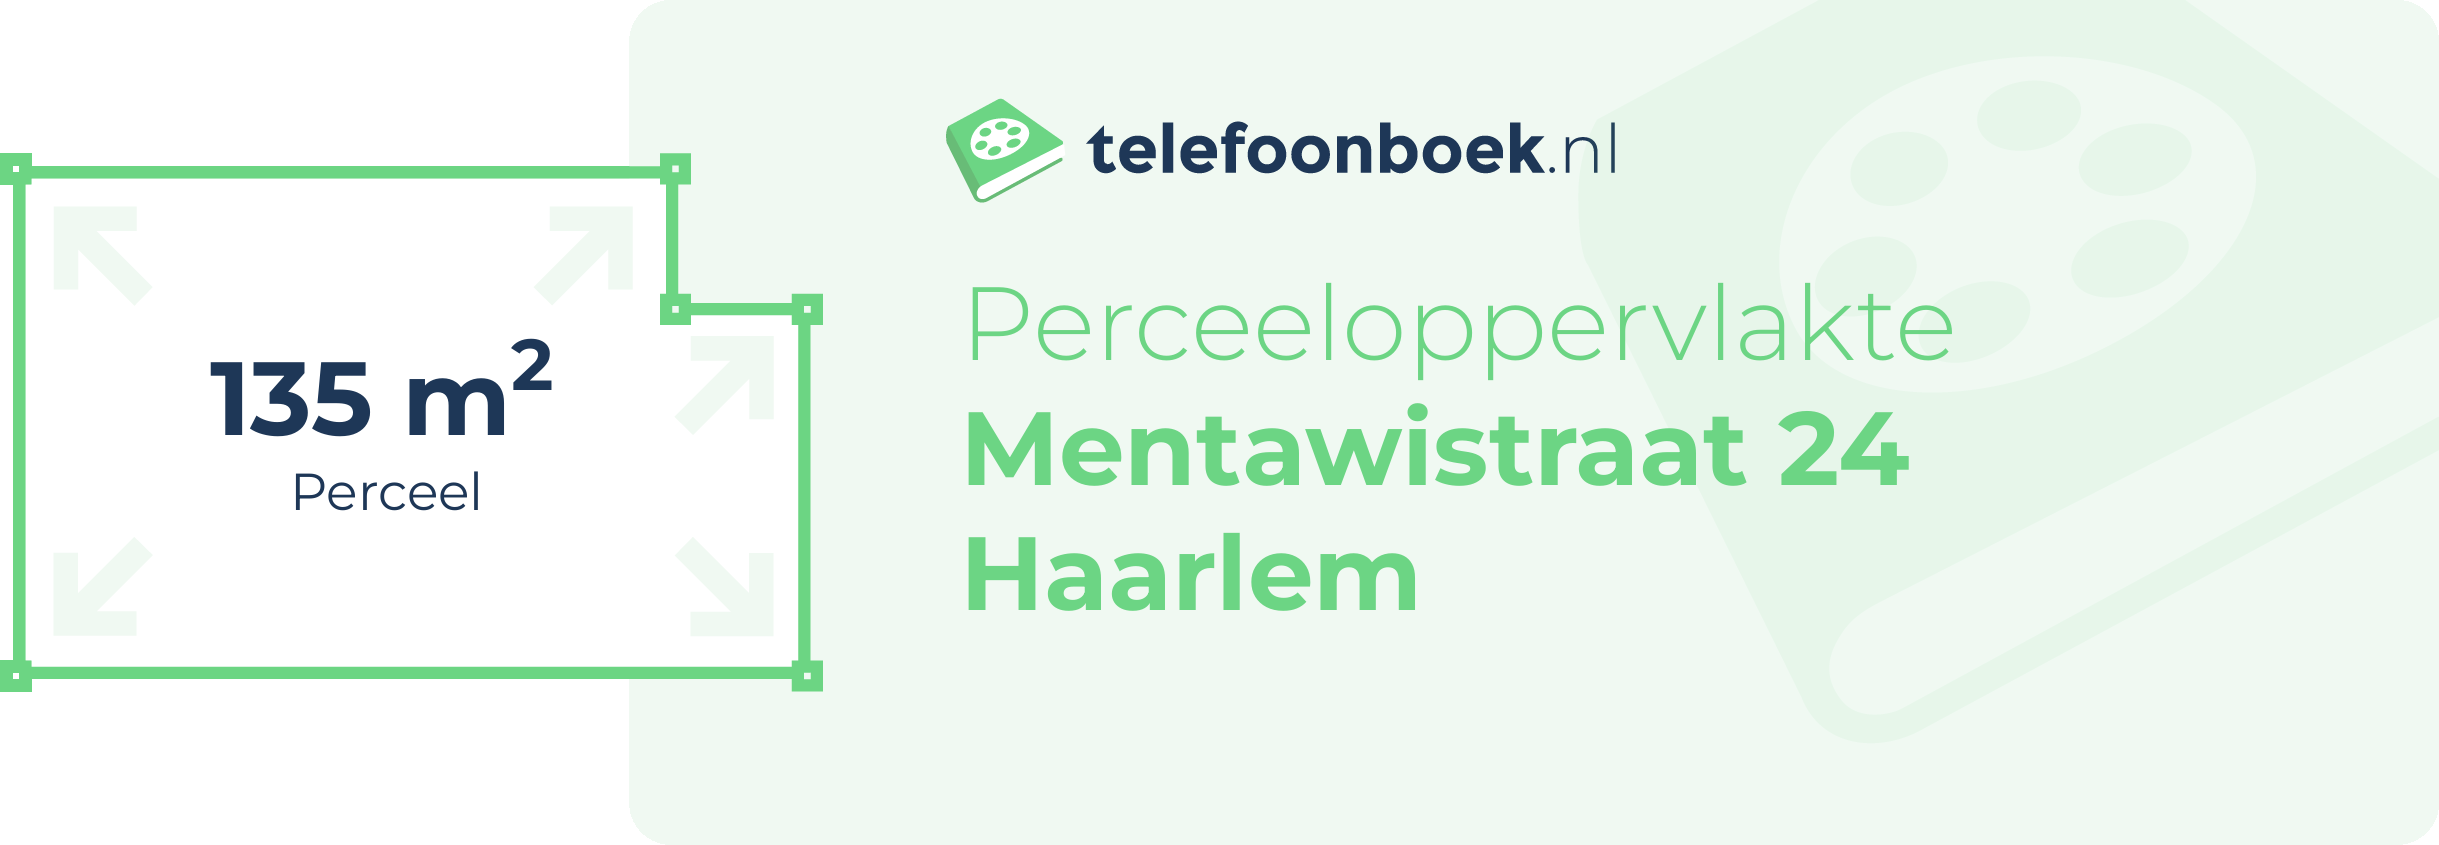 Perceeloppervlakte Mentawistraat 24 Haarlem